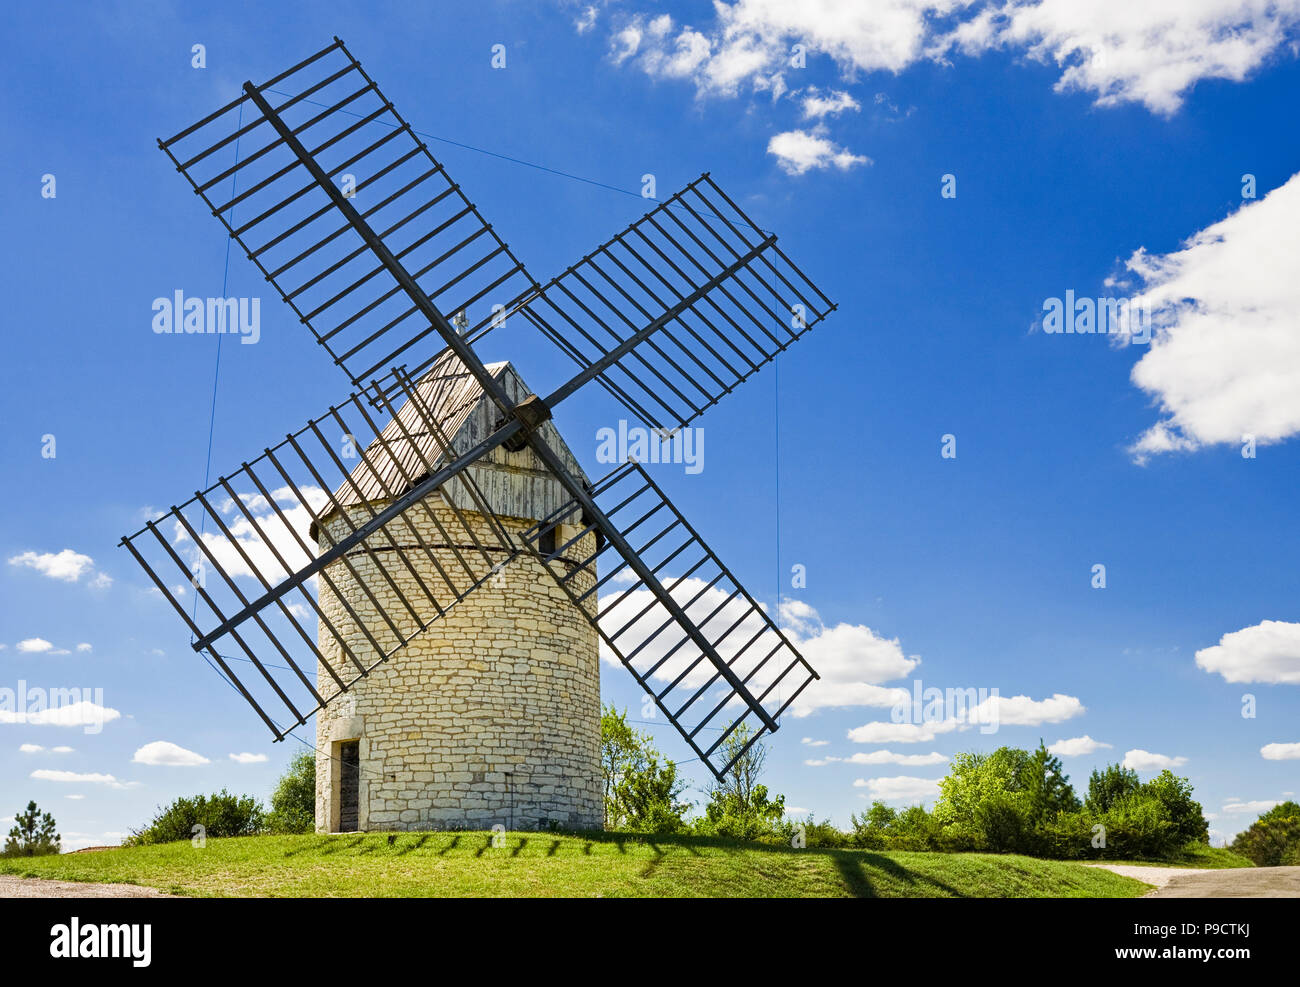 Traditionelle alte französische Windmühle, moulin a vent de Boisse, in der Region des südlichen Frankreich, Europa Stockfoto